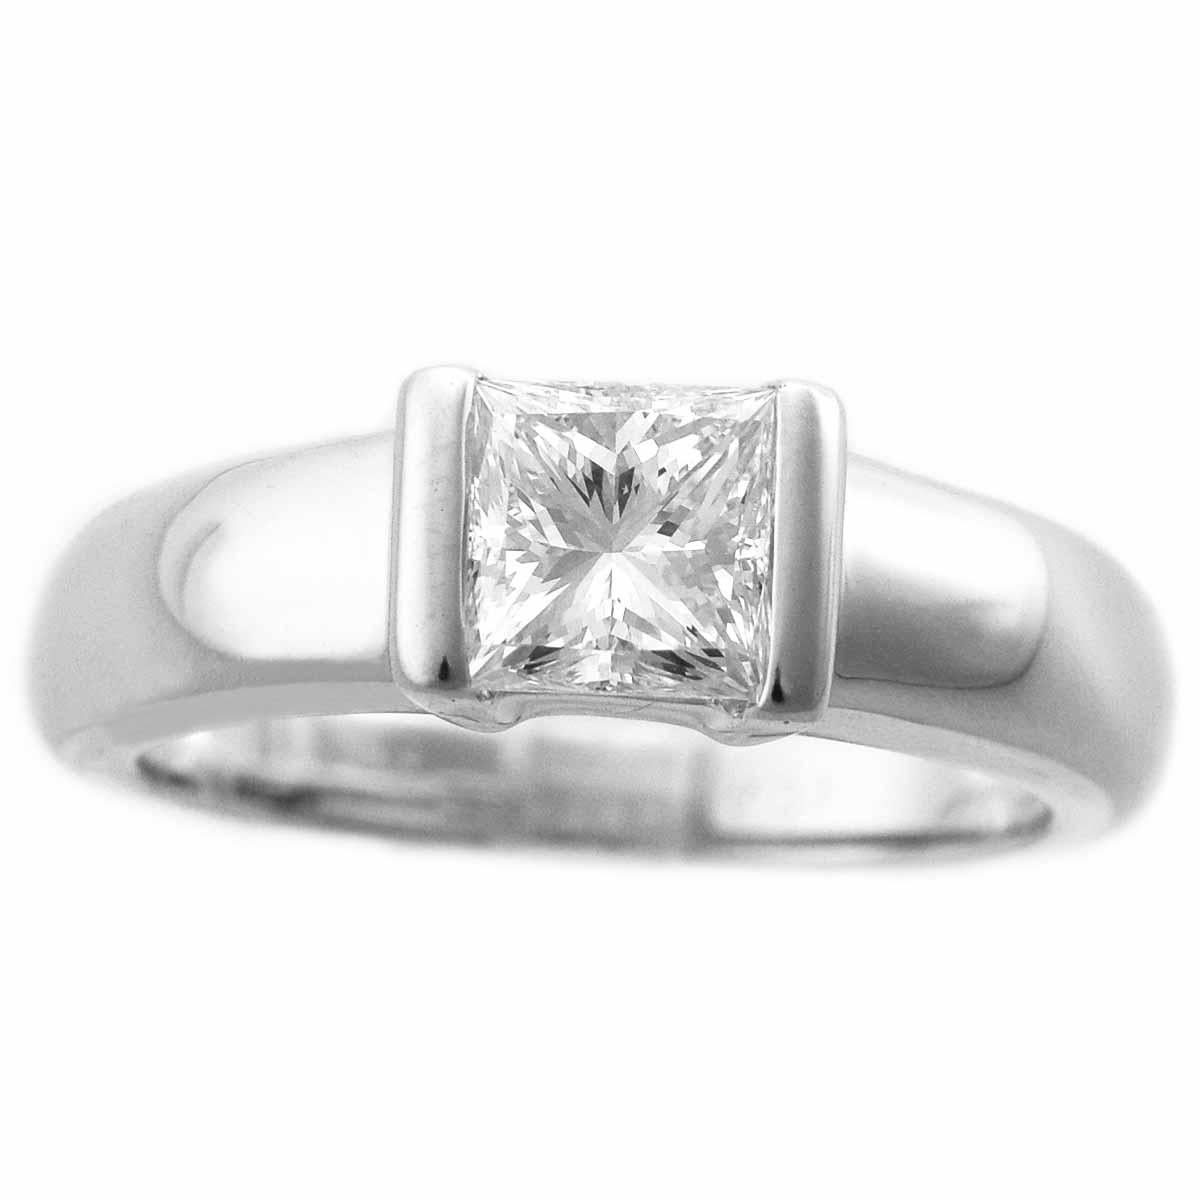 Marke:Van Cleef&Arpels
Name:Diamant Solitär Ring
Material:1P Diamant (1,04ct D-VVS2), 750 K18 WG Weißgold
Gewicht:6.2g（ungefähr)
Ringgröße:Britisch & Australisch:M  /   USA & Kanada:6 /  Französisch & Russisch:52 /  Deutsch:16 1/2 /  Japanisch:  12